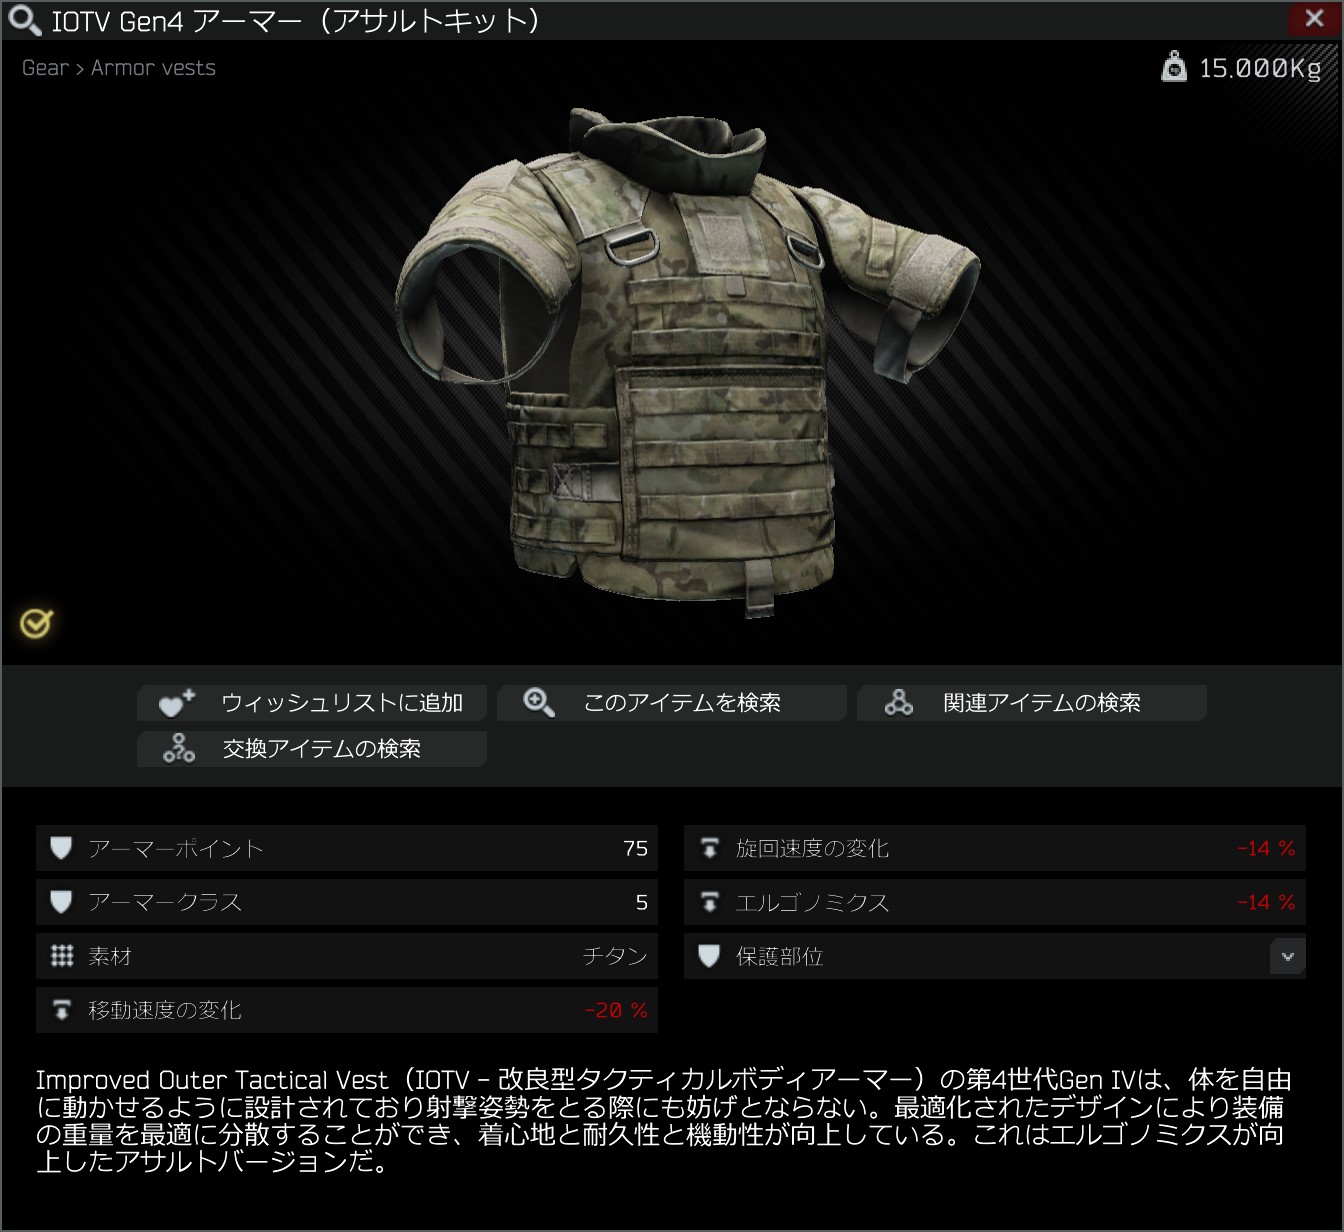 IOTV Gen4 armor (assault kit).jpg